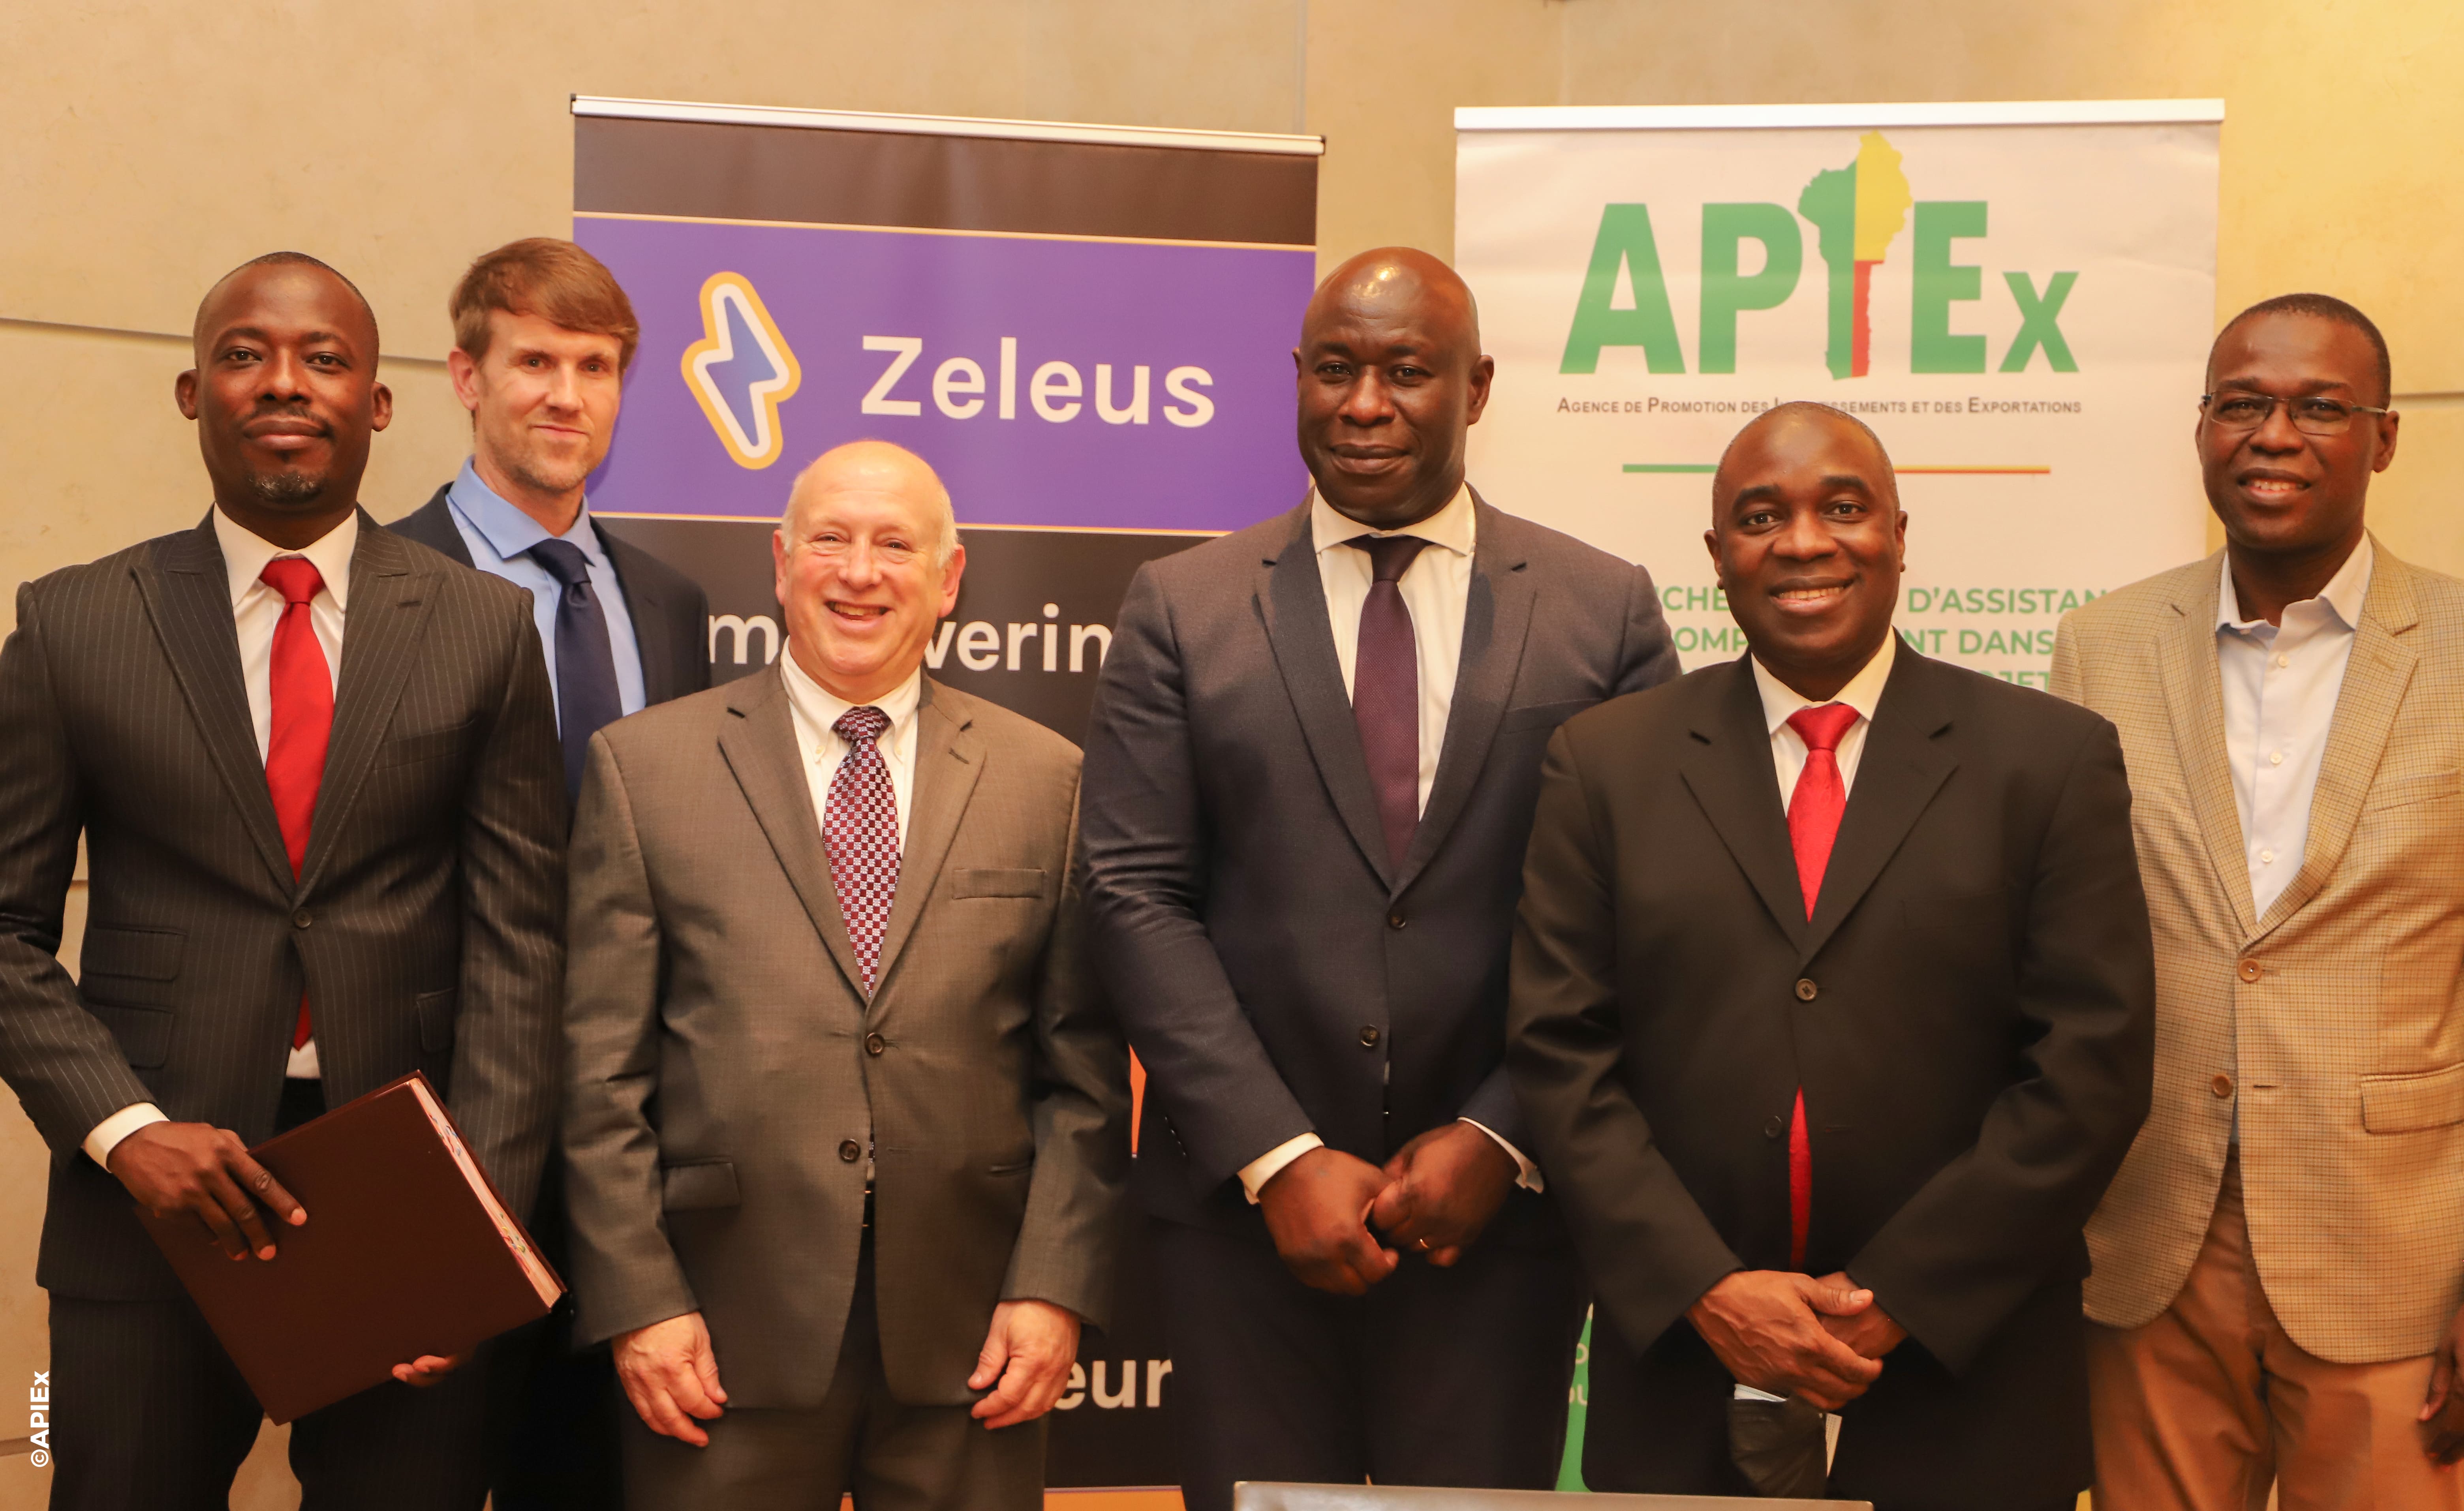 L’Agence pour la Promotion des Investissements et des Exportations contracte avec le groupe américain ZELEUS, spécialisé dans le conseil en orientation professionnelle